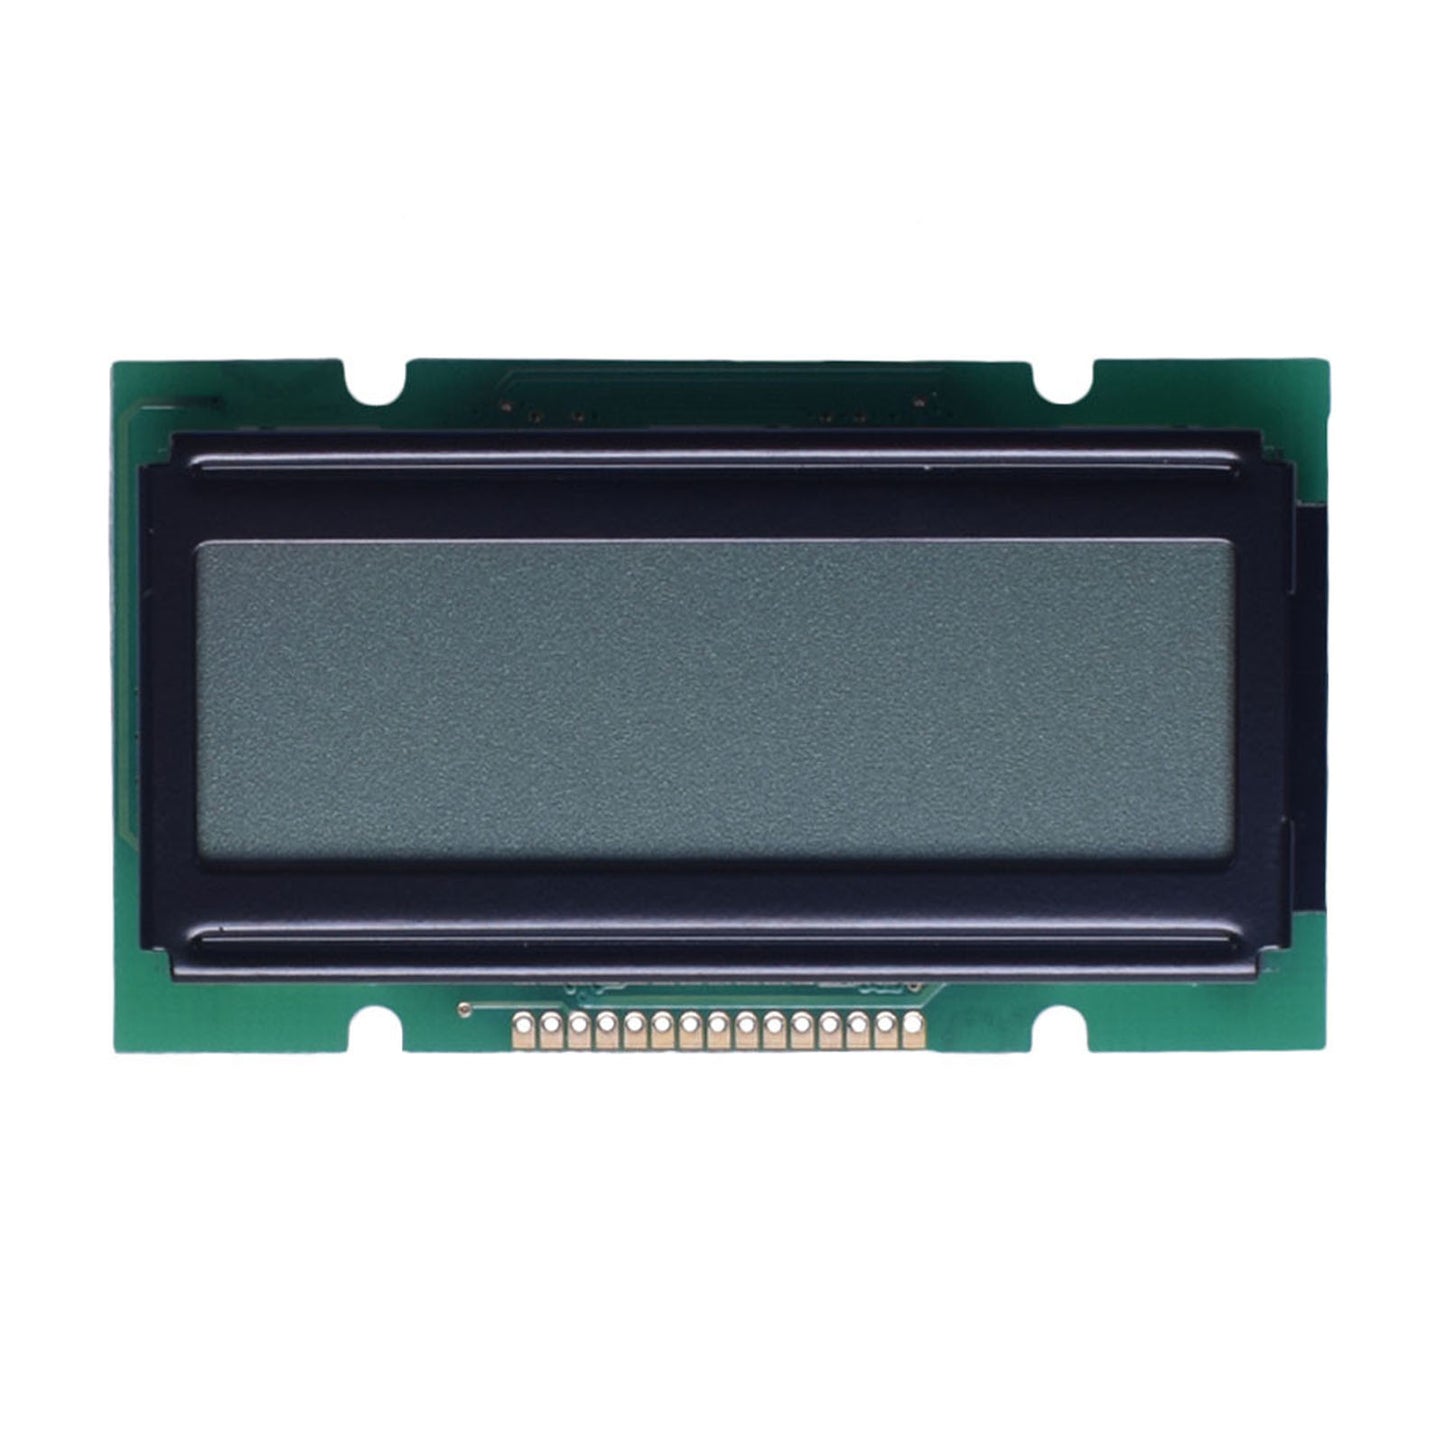 DisplayModule 12x2 Character LCD - MCU